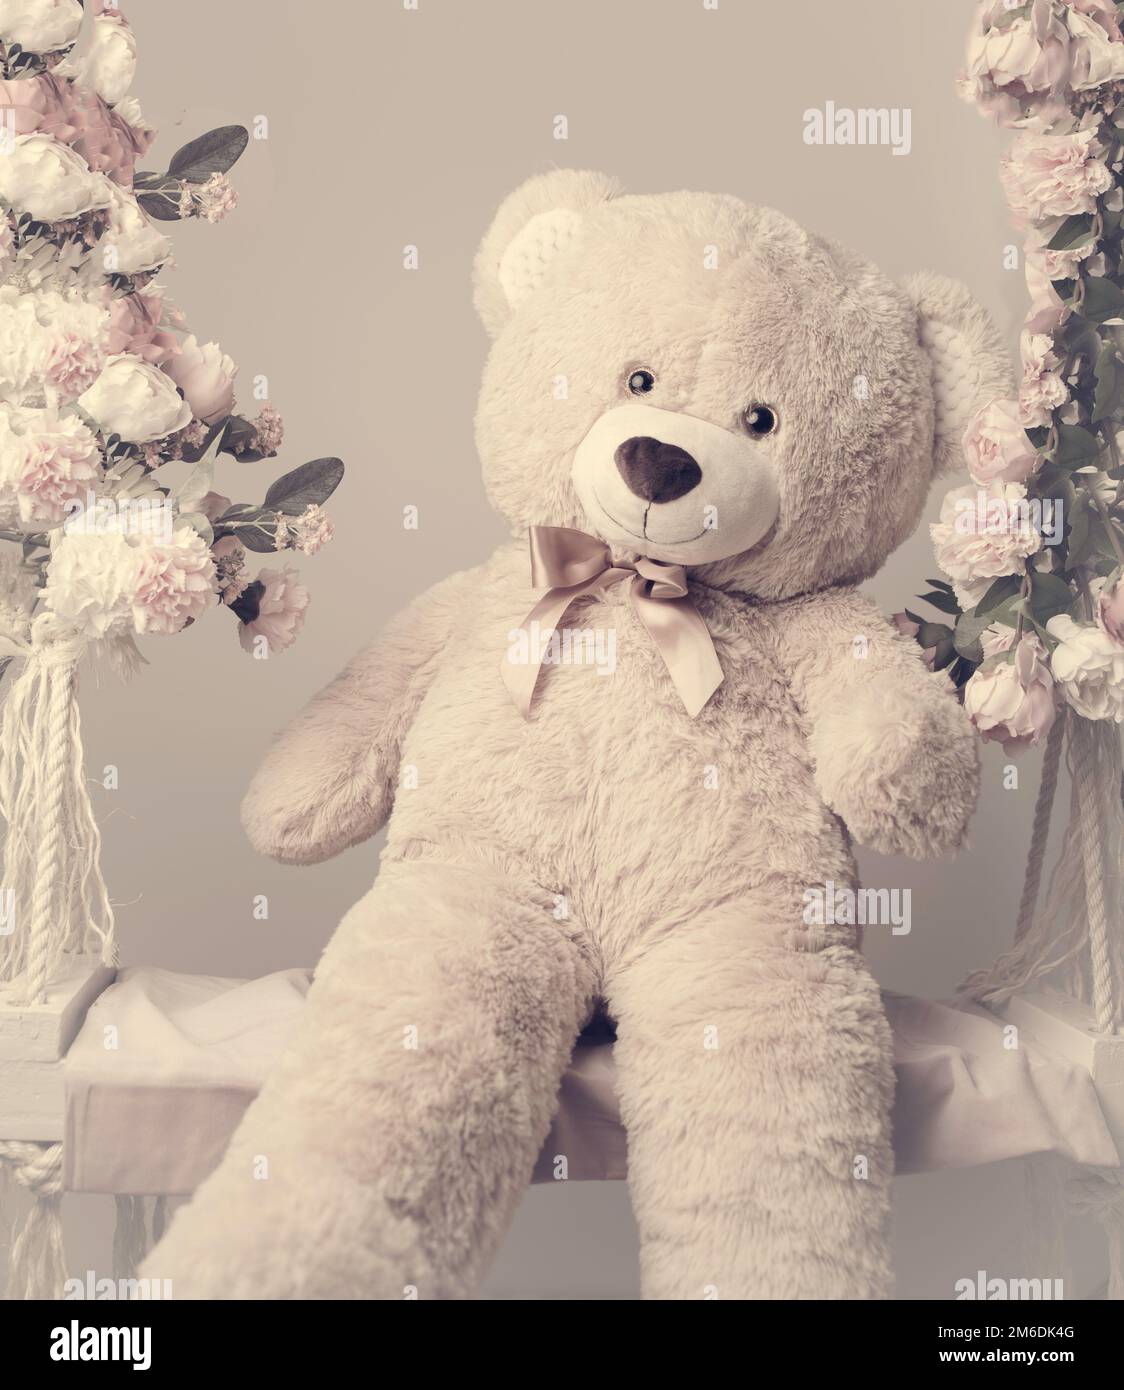 The cute teddybear Stock Photo